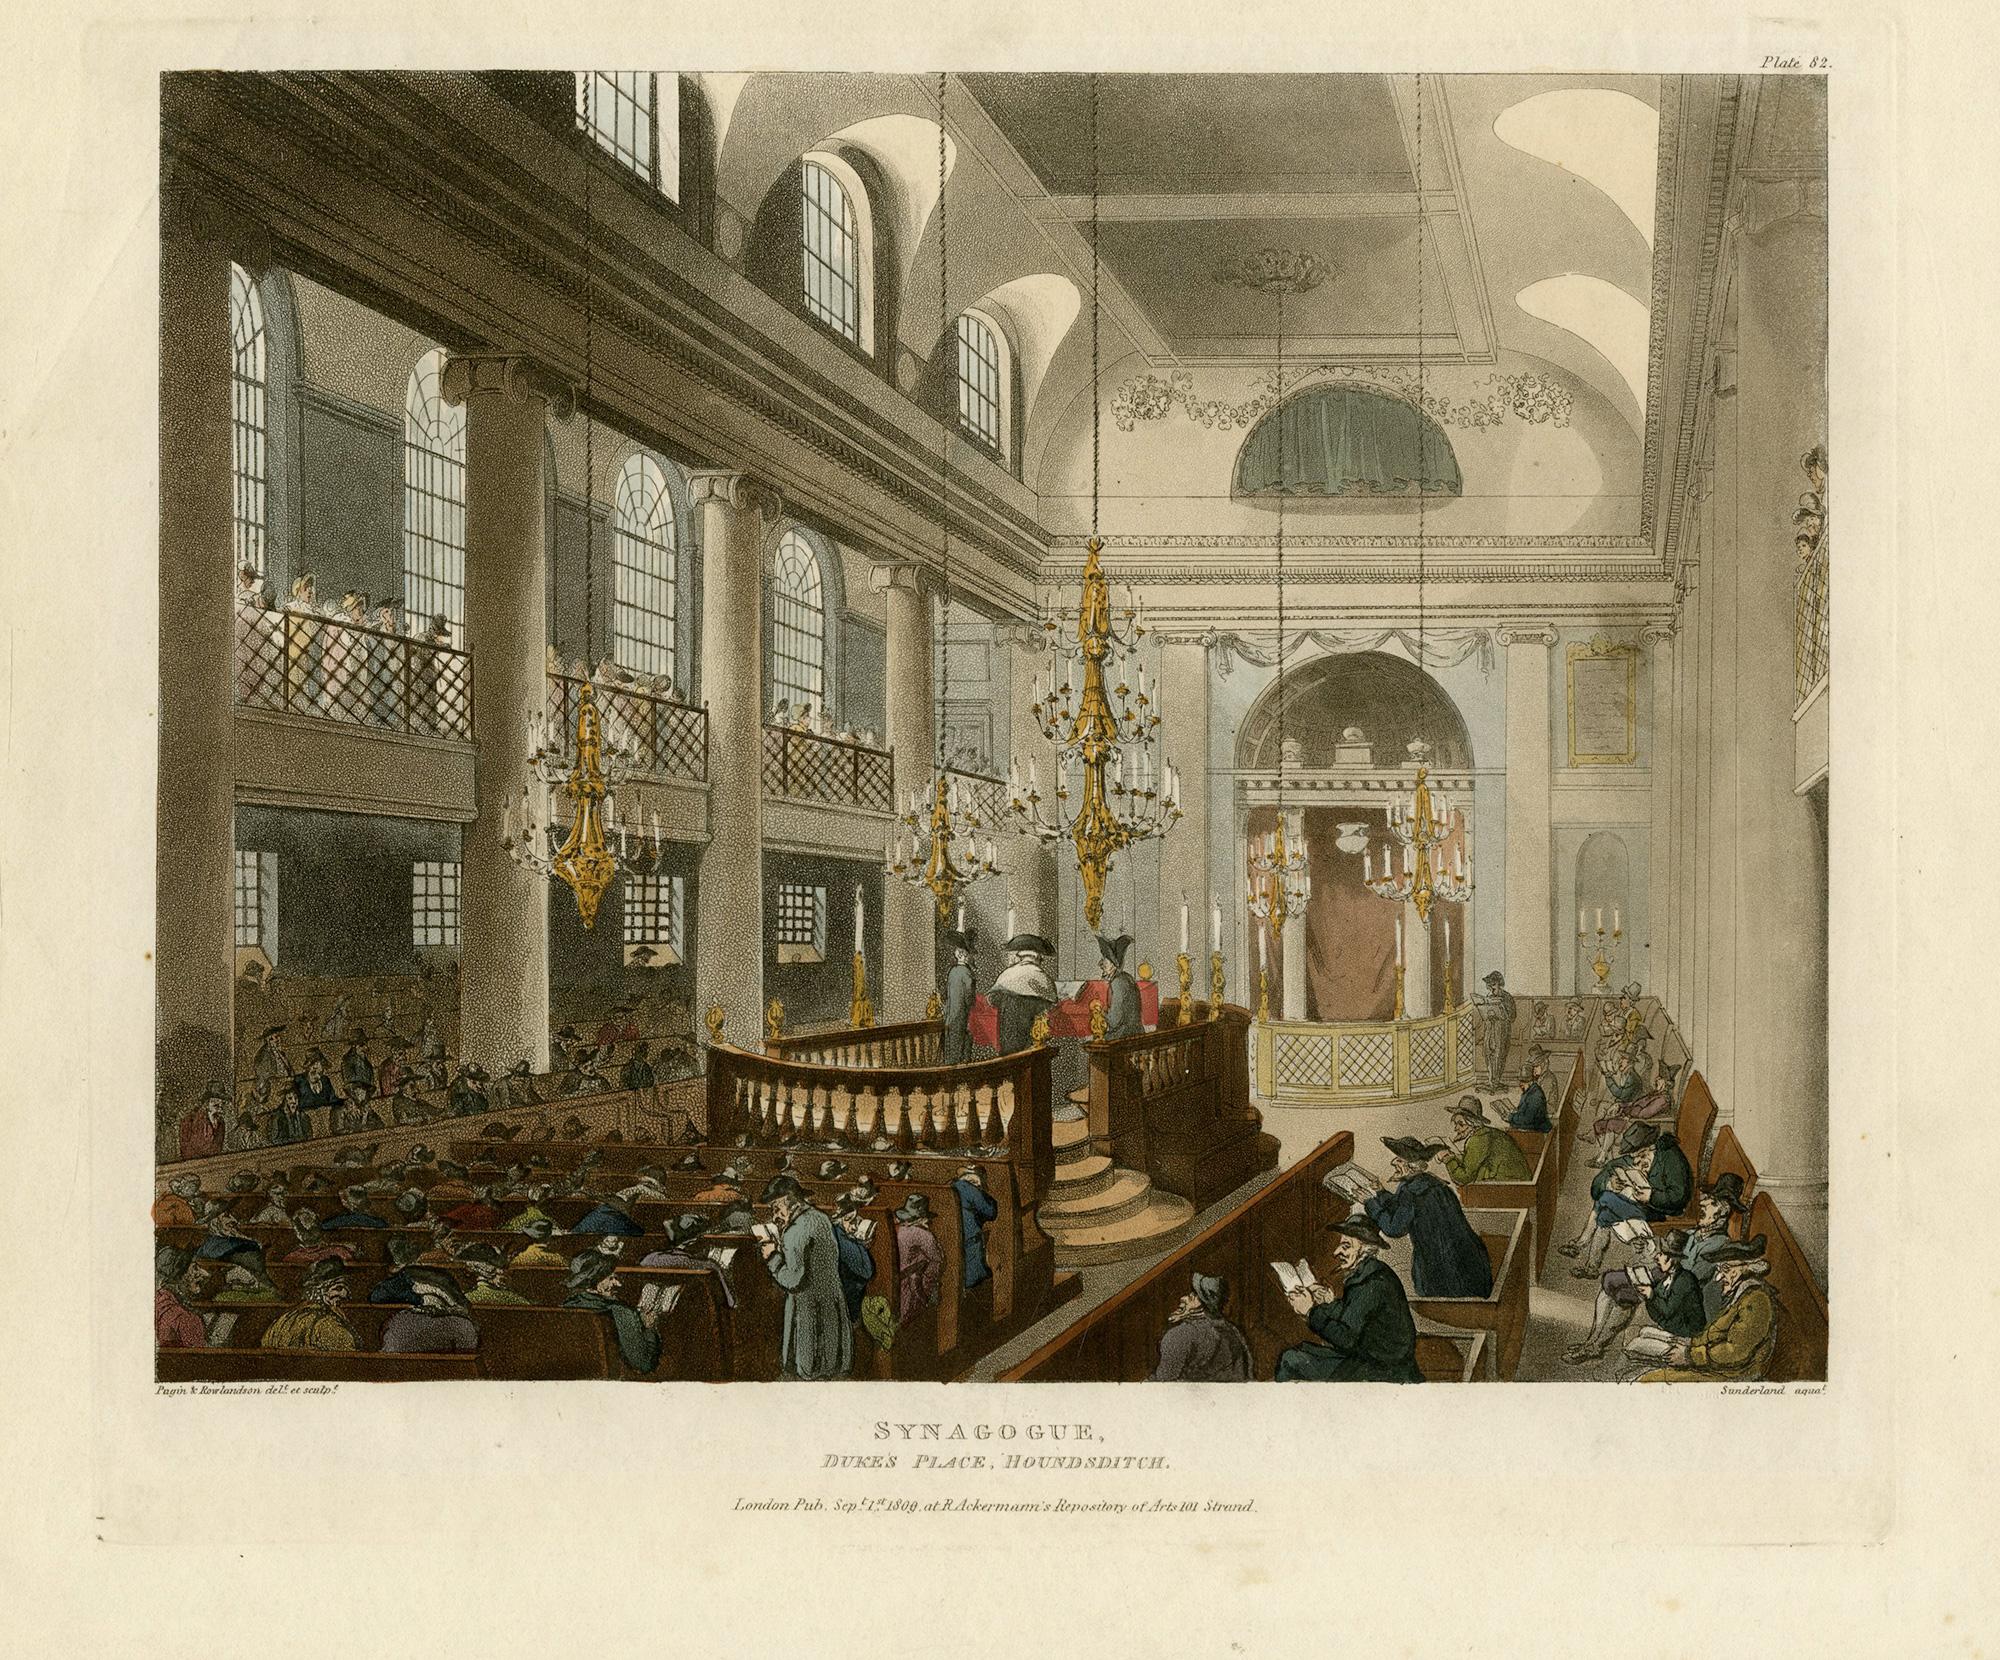 Synagoge Duke's Palace Houndsditch von Th. Sunderland nach Pugin & Rowlandson – Print von Thomas Rowlandson